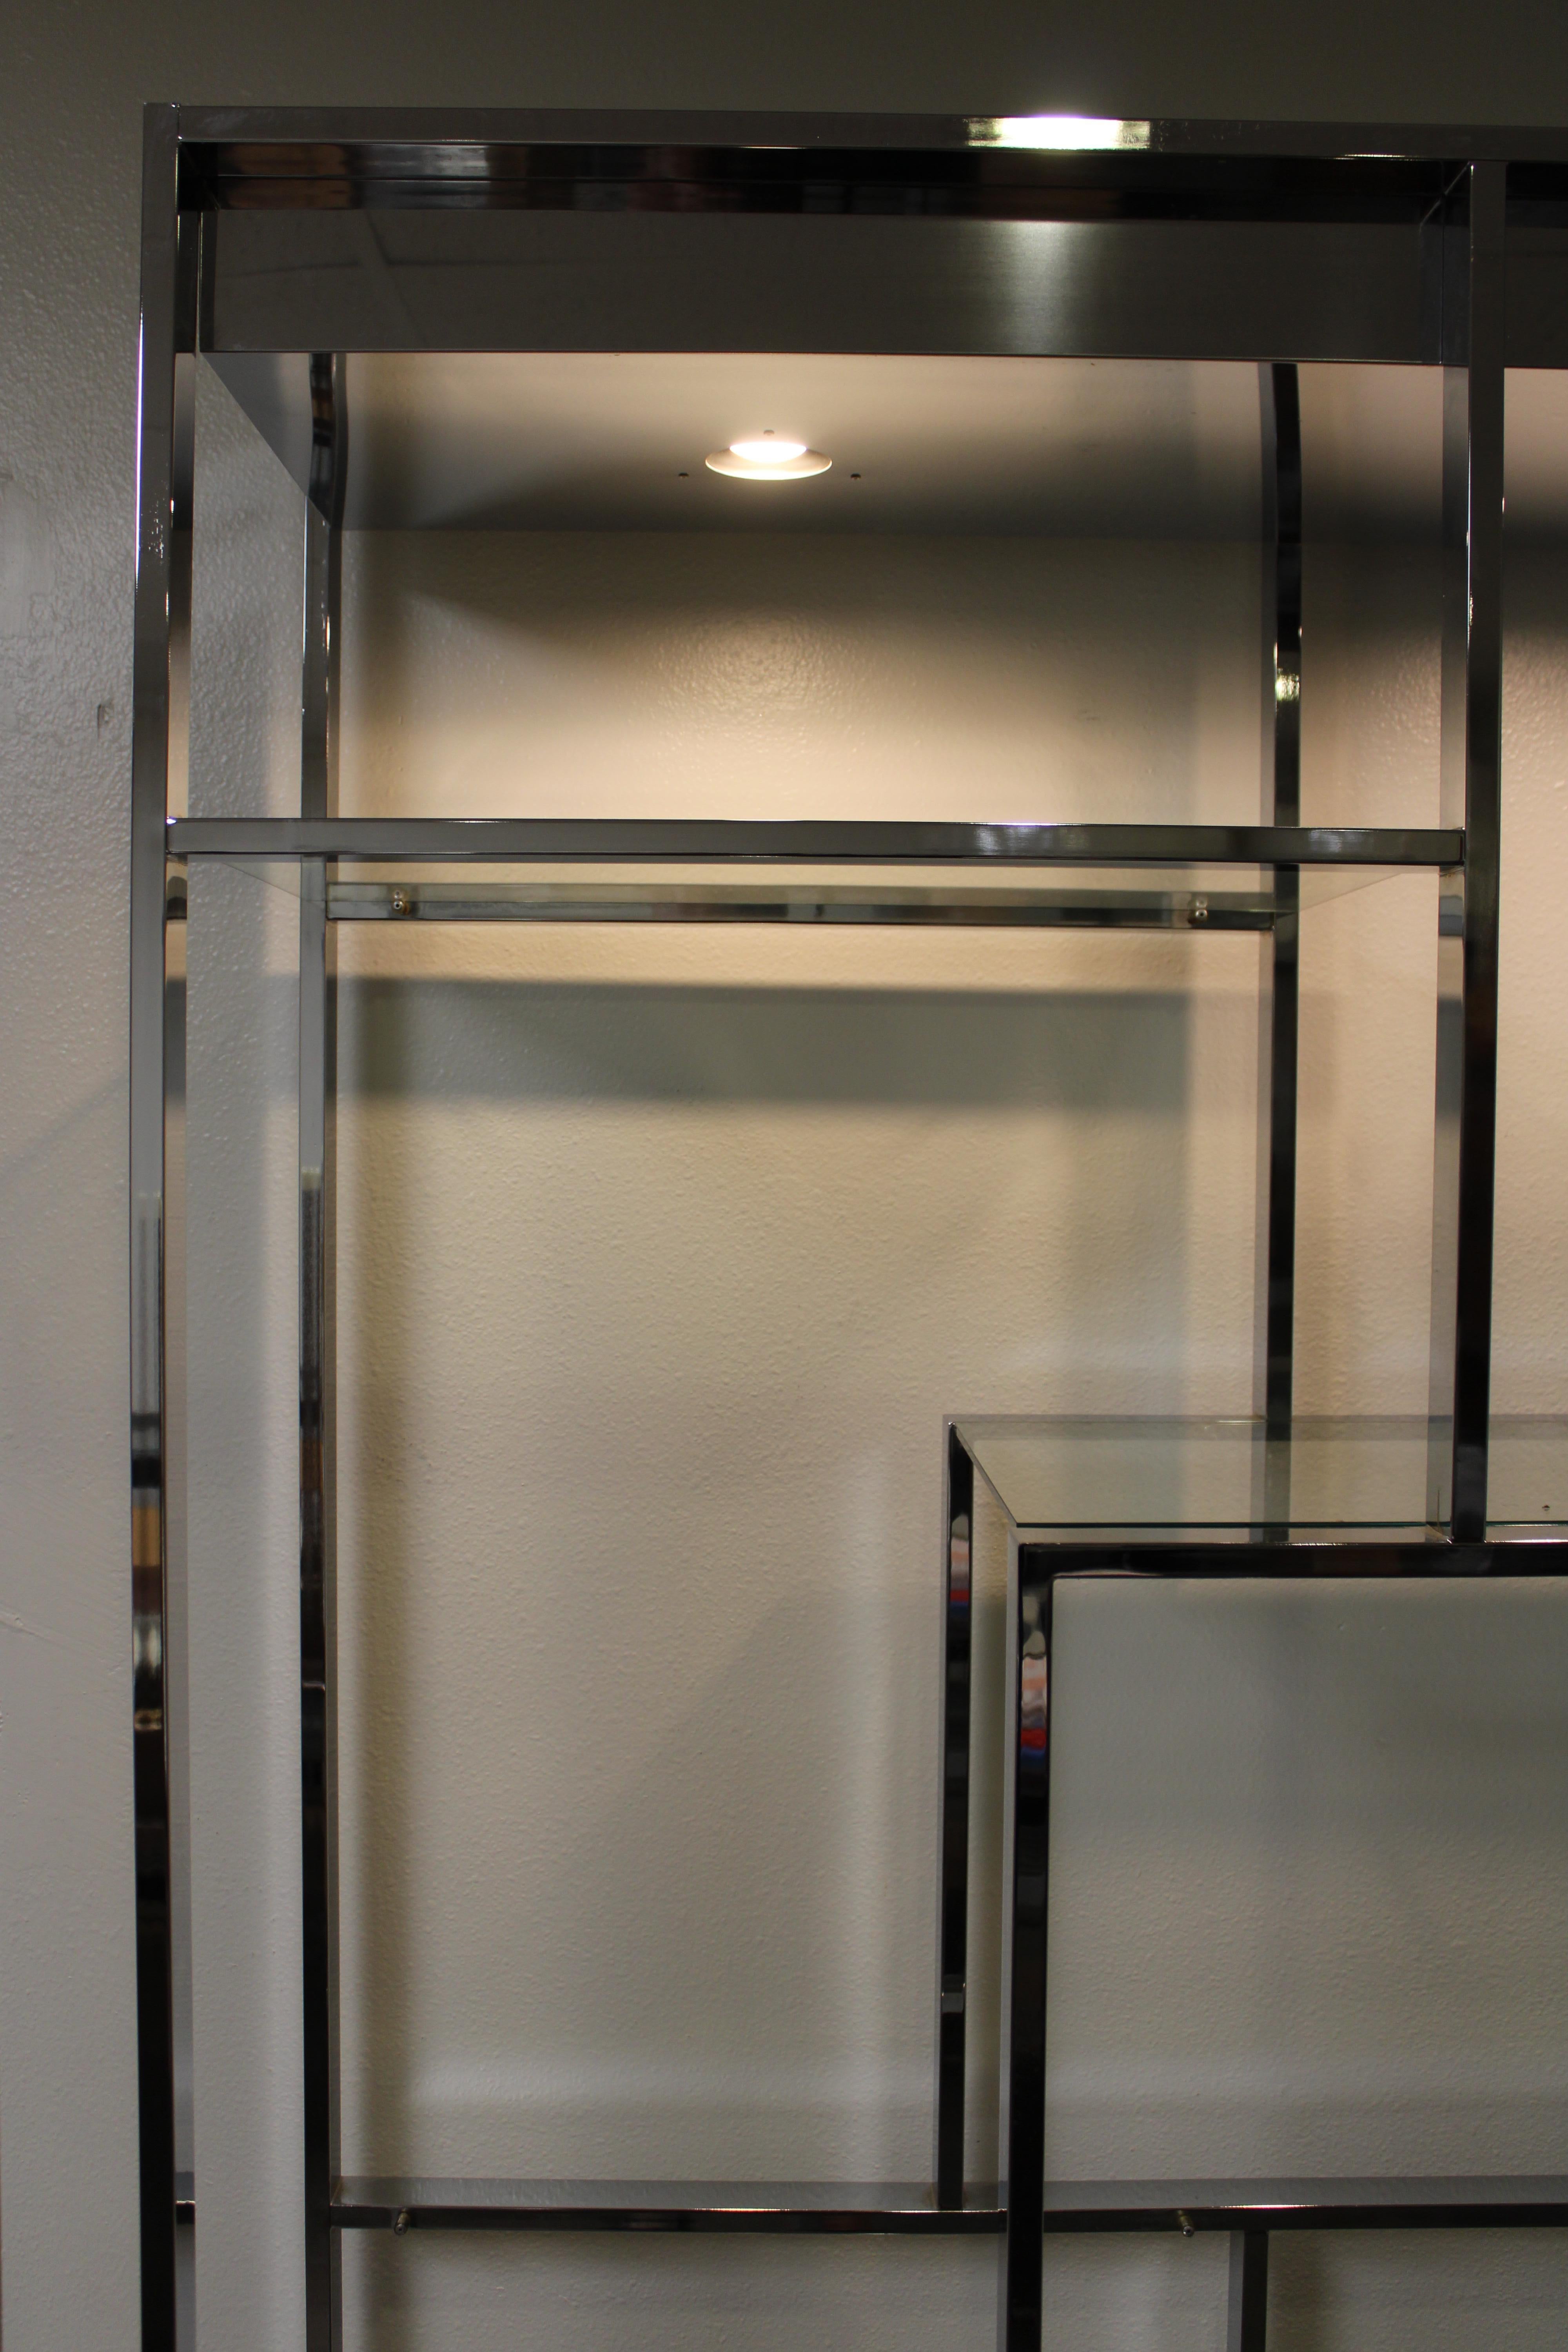 Etagere des Design Institute of America (DIA) aus verchromtem Stahl mit neuen Einlegeböden aus gehärtetem Glas.  Die Etagere hat ein Etikett, das auf 1983 datiert ist.  Chrom ist makellos und beide Leuchten funktionieren.  Oben auf der Etagere